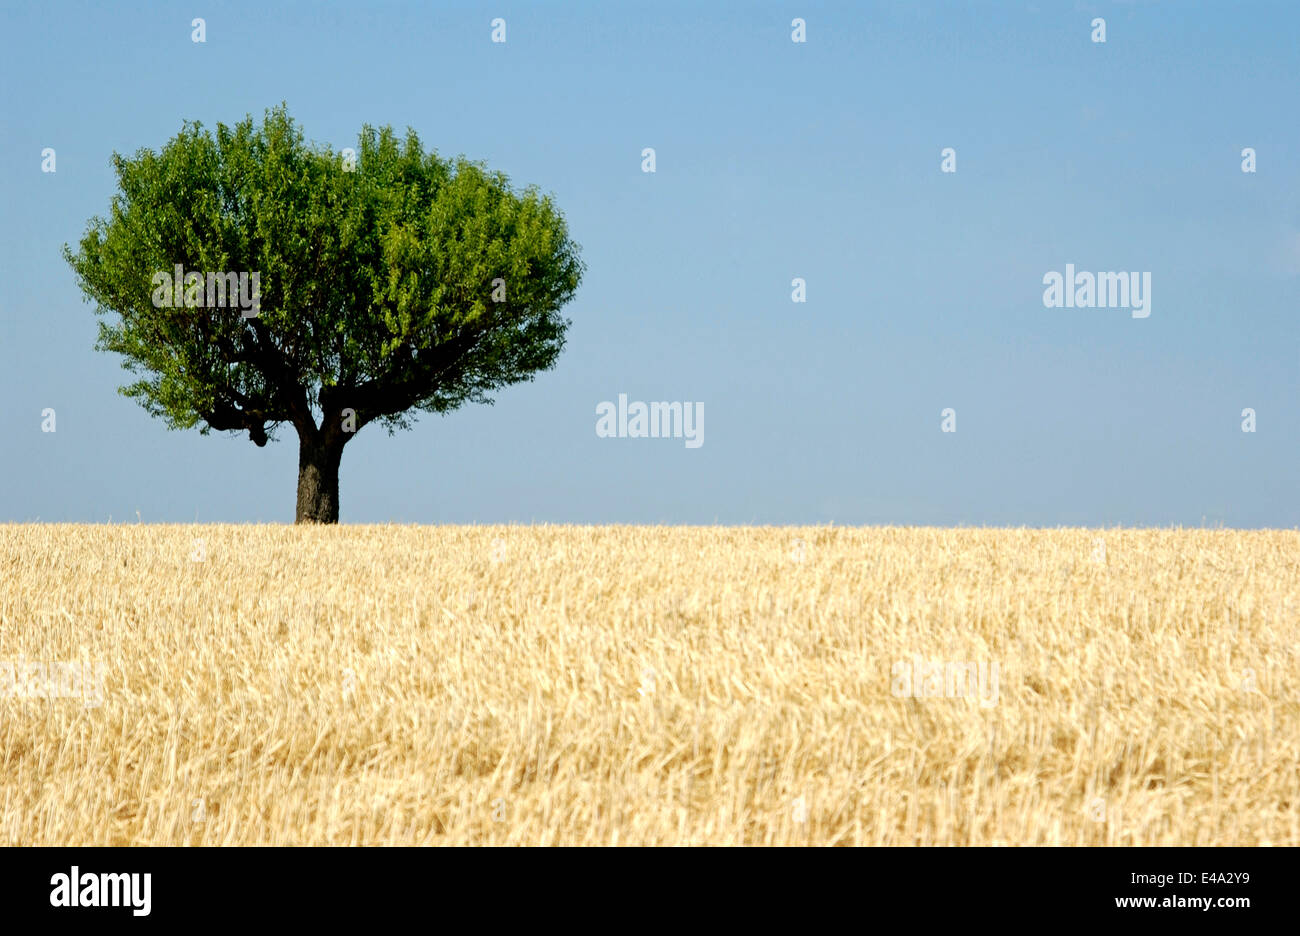 Albero di olivo in un campo di grano in Provenza, Francia nella stagione estiva Foto Stock